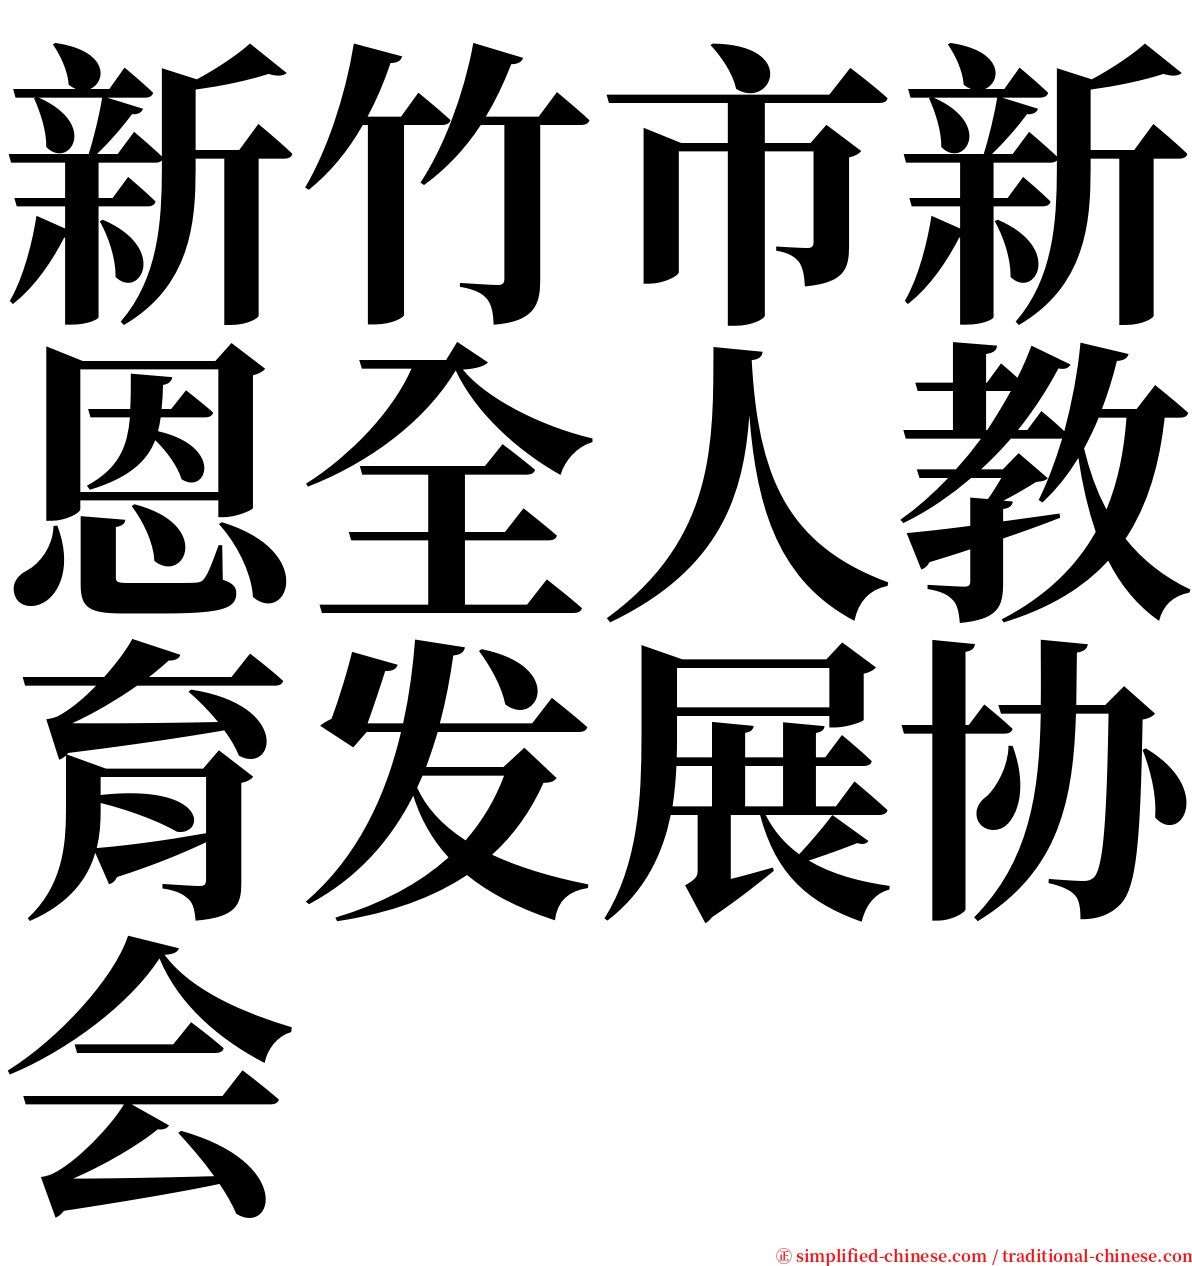 新竹市新恩全人教育发展协会 serif font